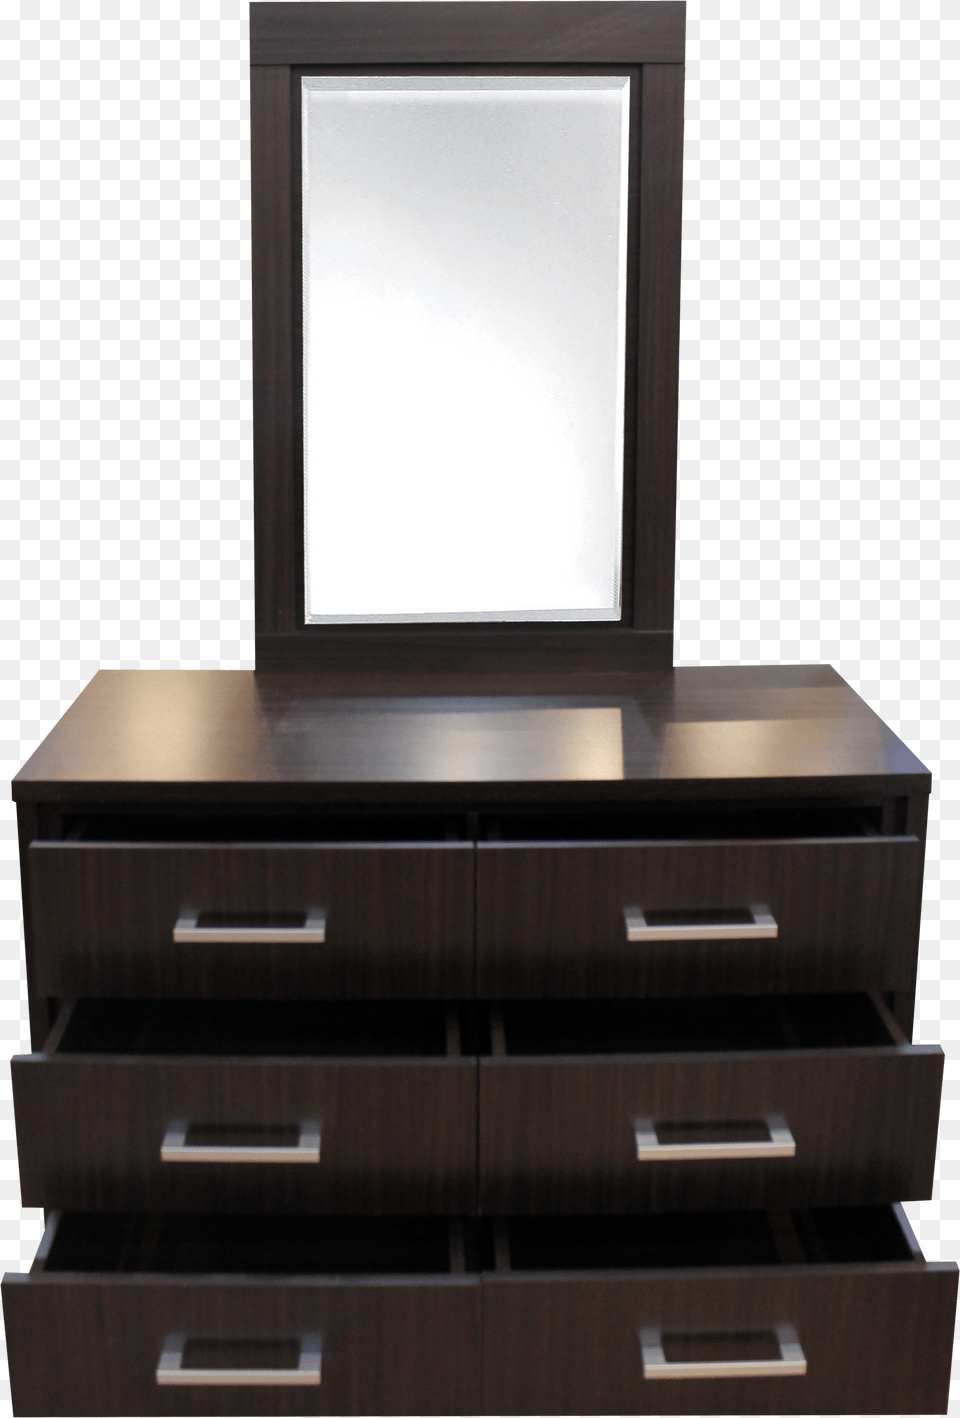 Dresser Png Image